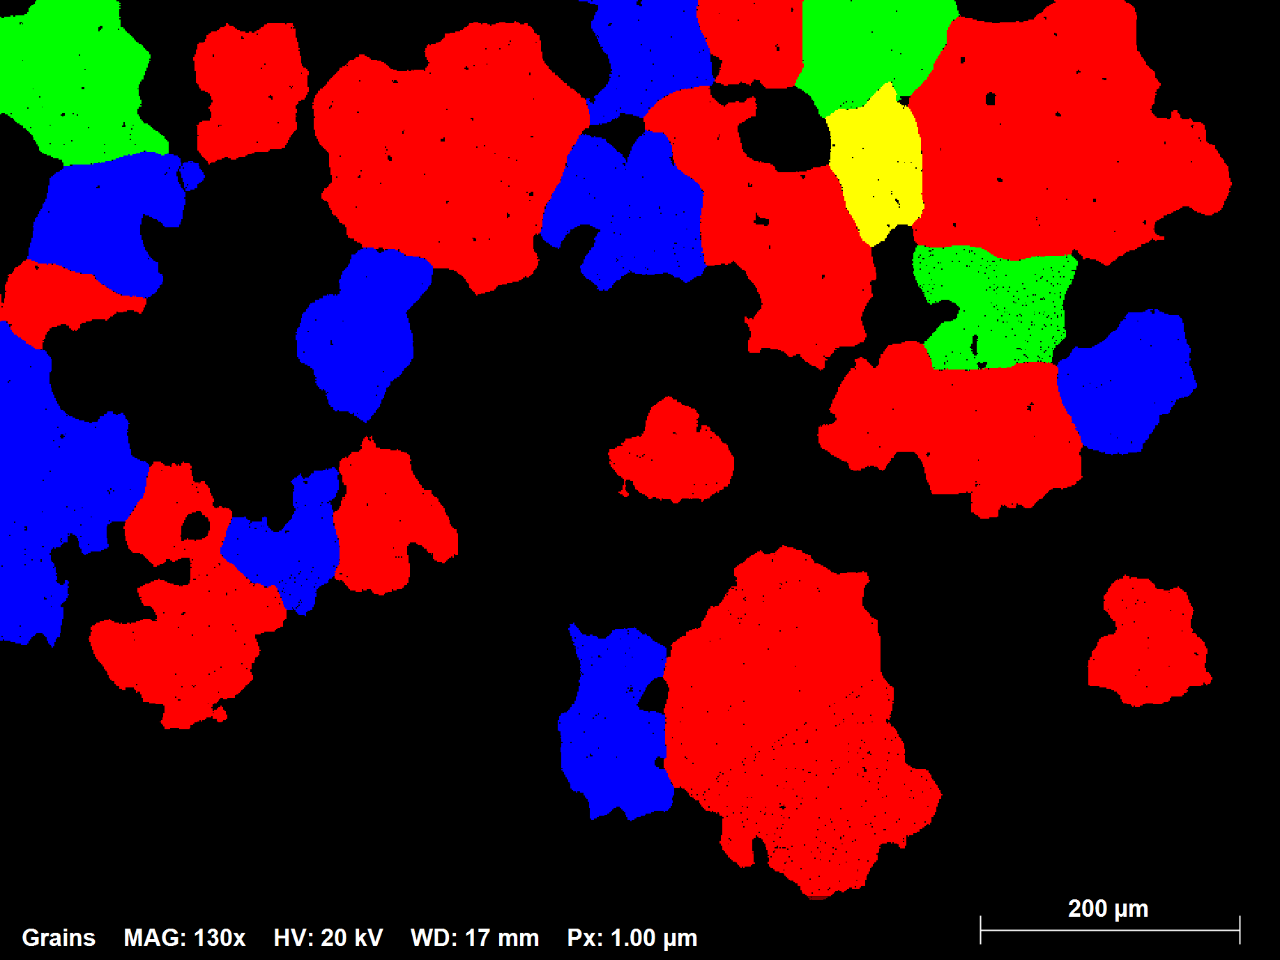 図1.3：70ミクロン以上の直径を持つすべての粒をランダムな色で示すNi合金EBSDマップのサブセット。総数の 1%の粒がマップ領域の約 42% を占めます。